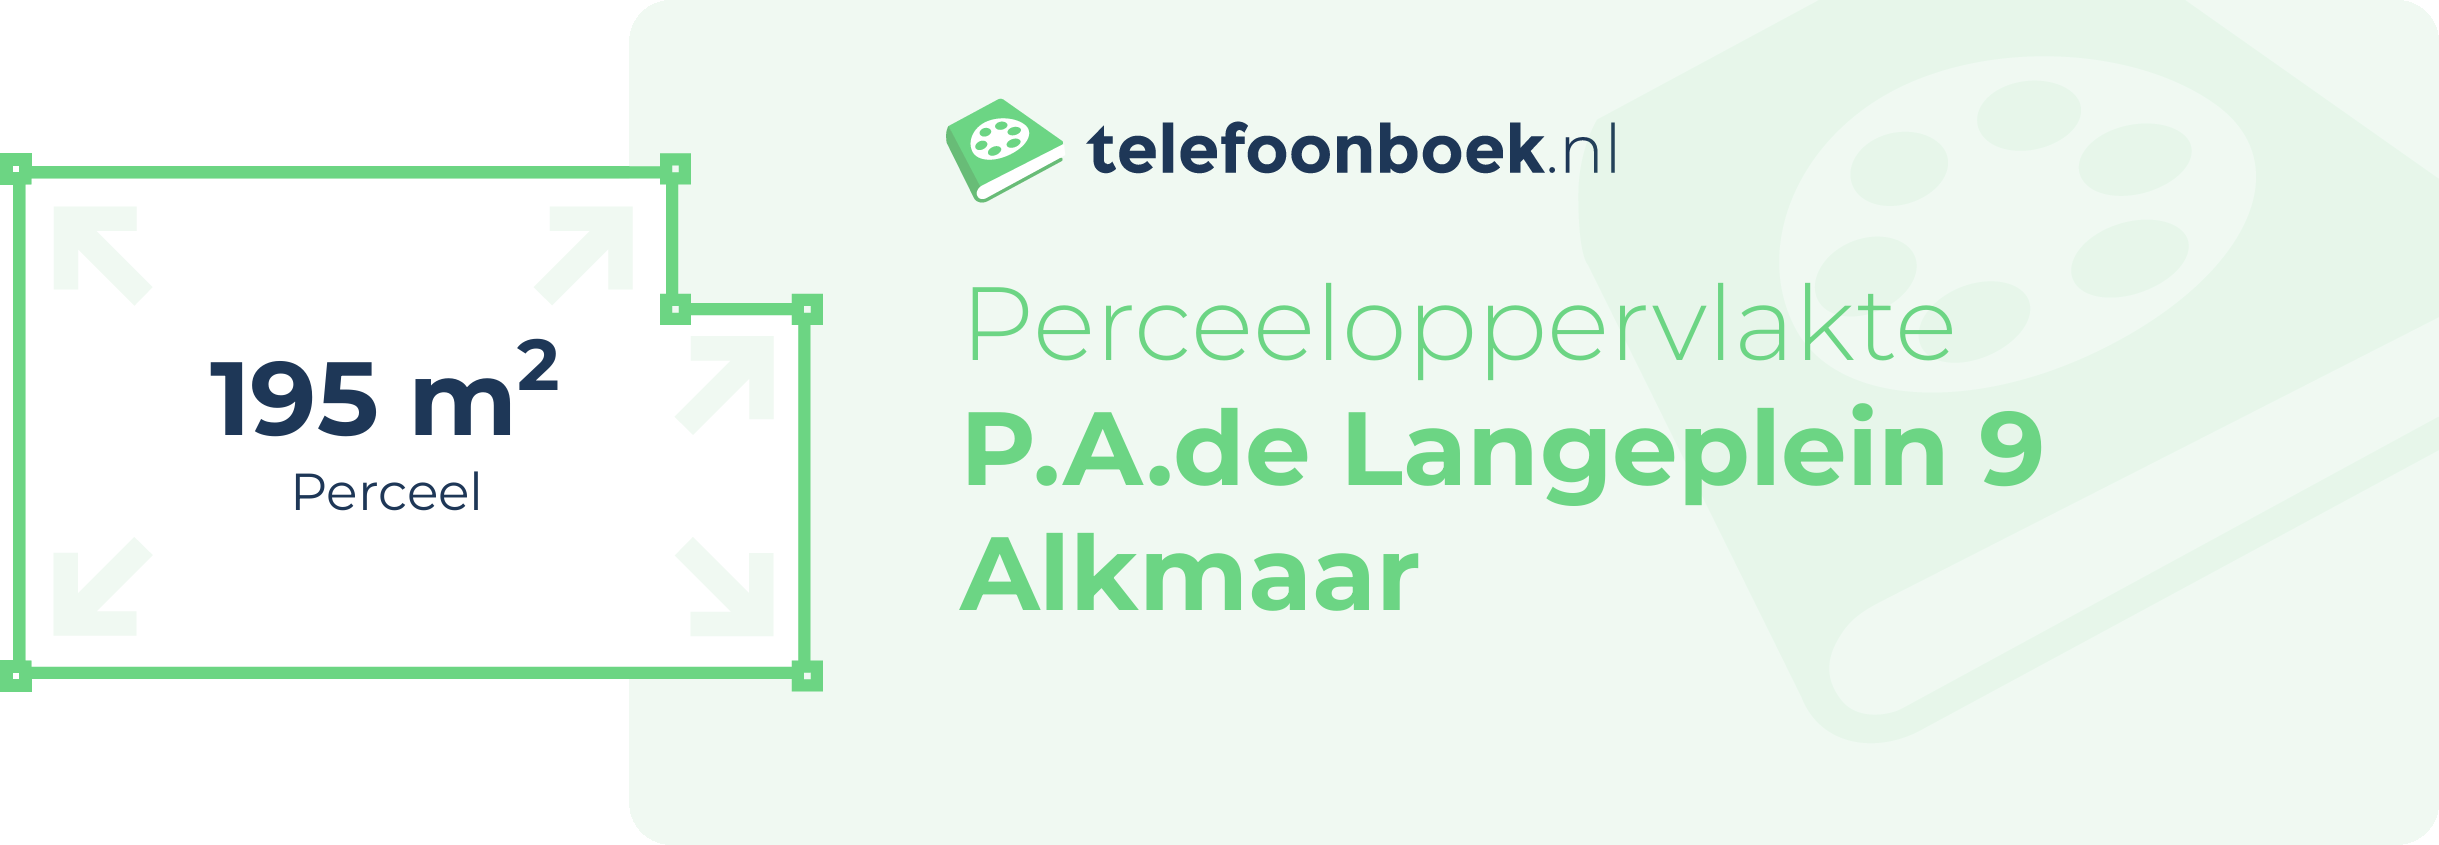 Perceeloppervlakte P.A.de Langeplein 9 Alkmaar